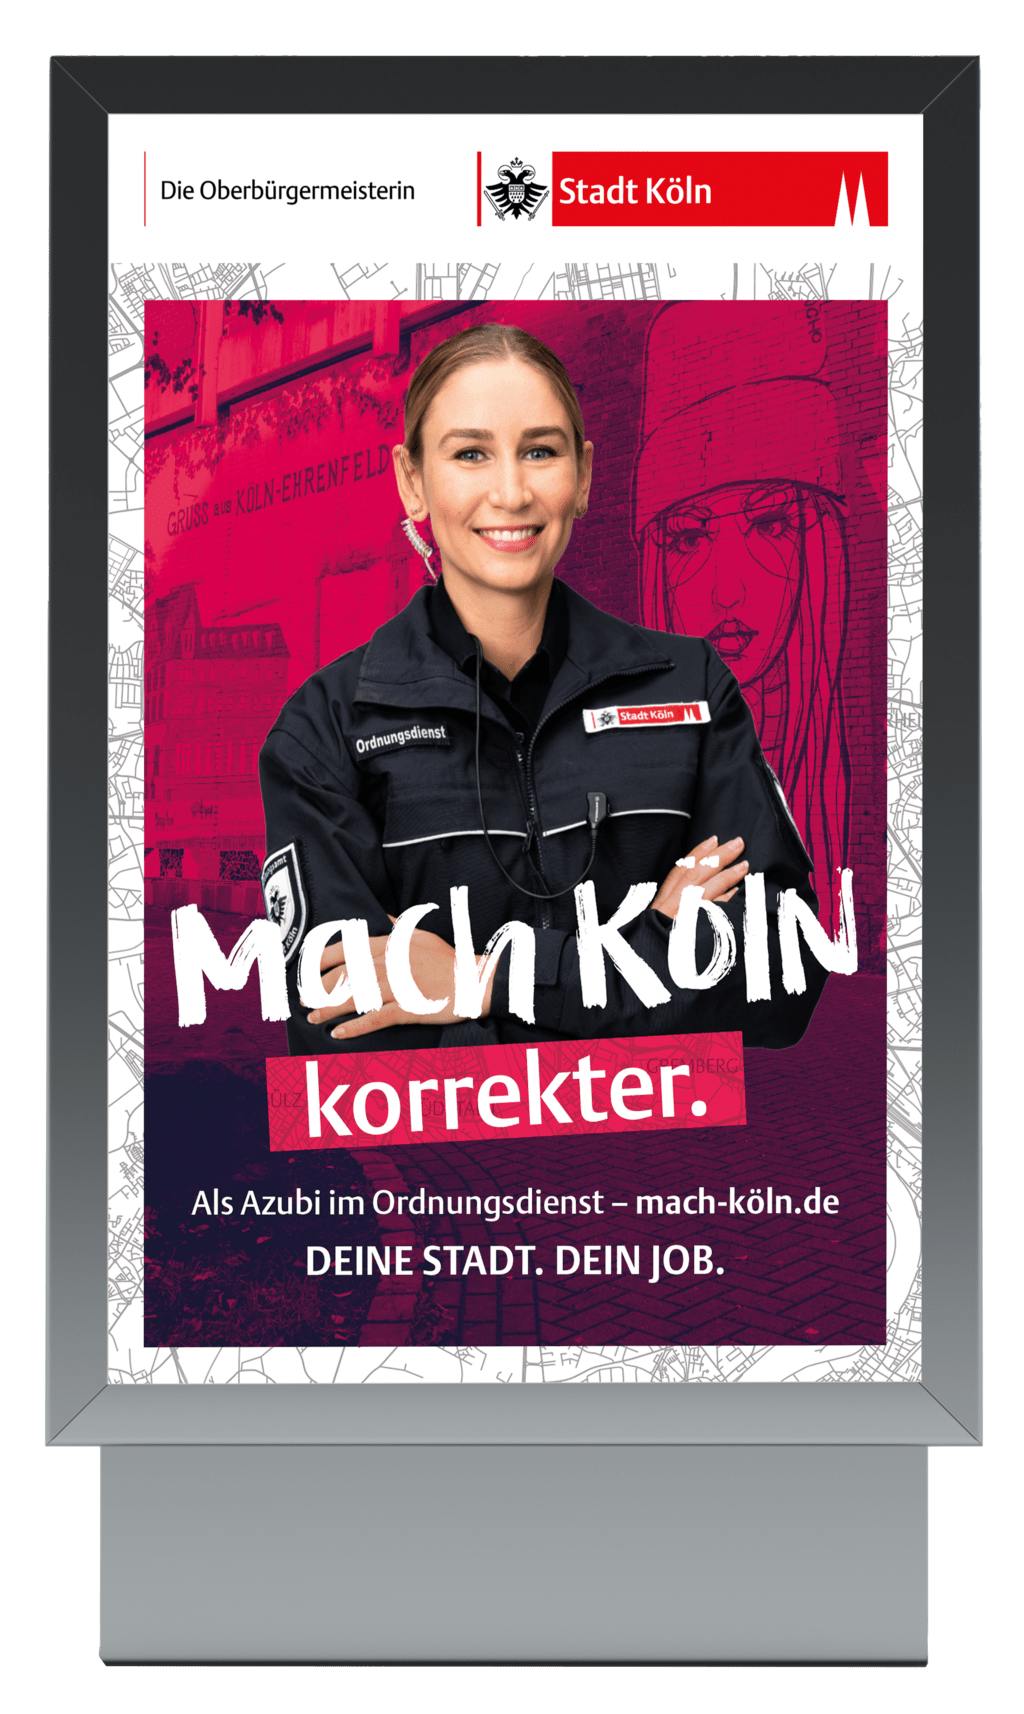 Werbeplakat der Stadt Köln mit dem Satz "Mach Köln korrekter"